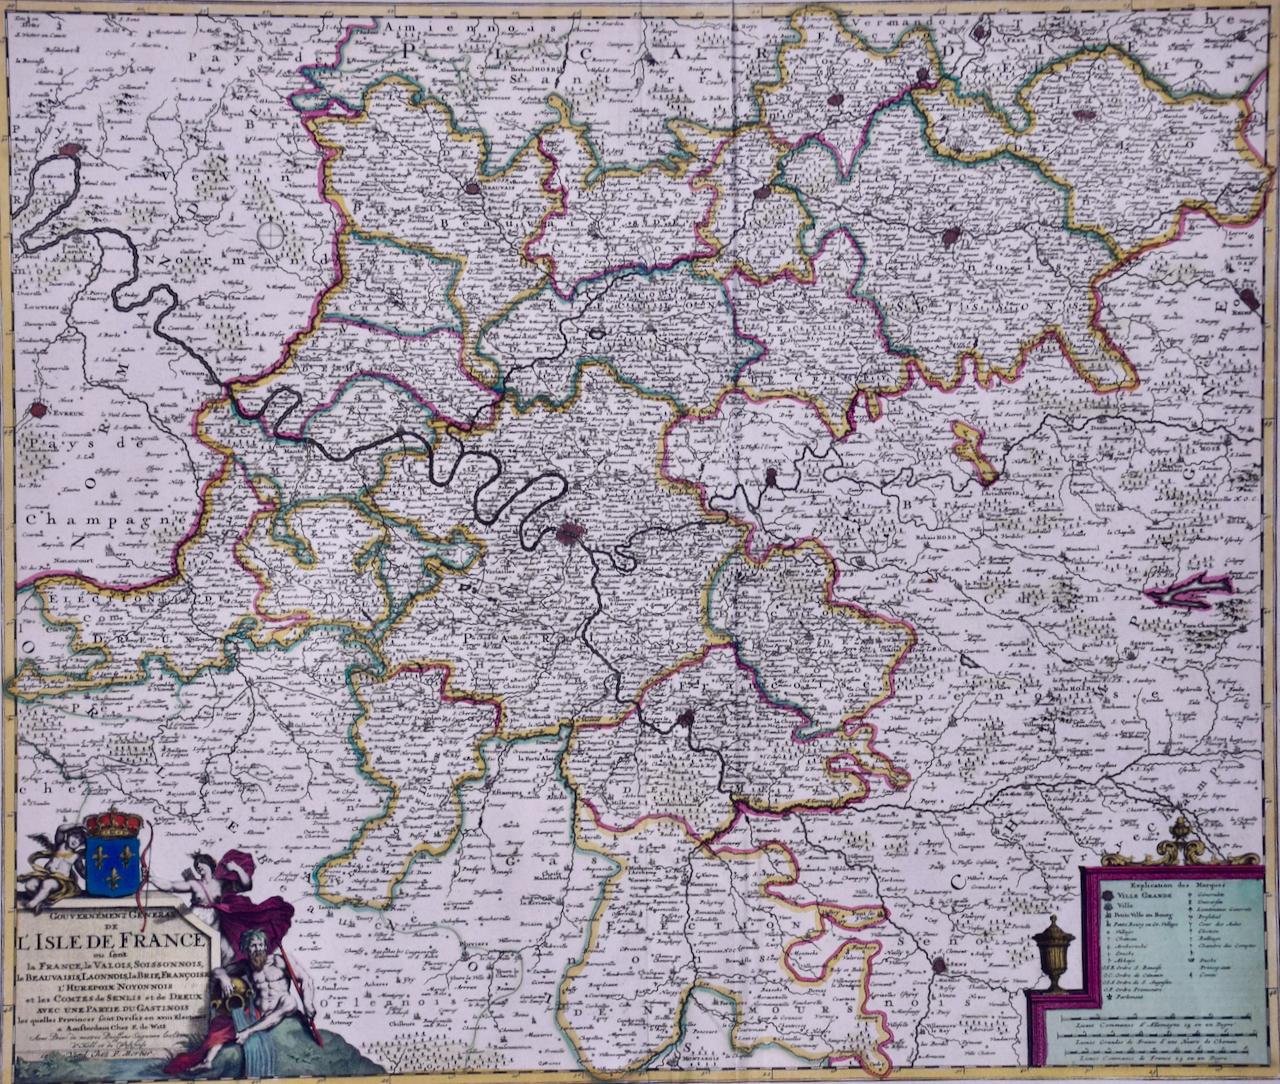 L'Isle de France : une carte du XVIIe siècle colorée à la main par De Wit  - Print de Frederick de Wit